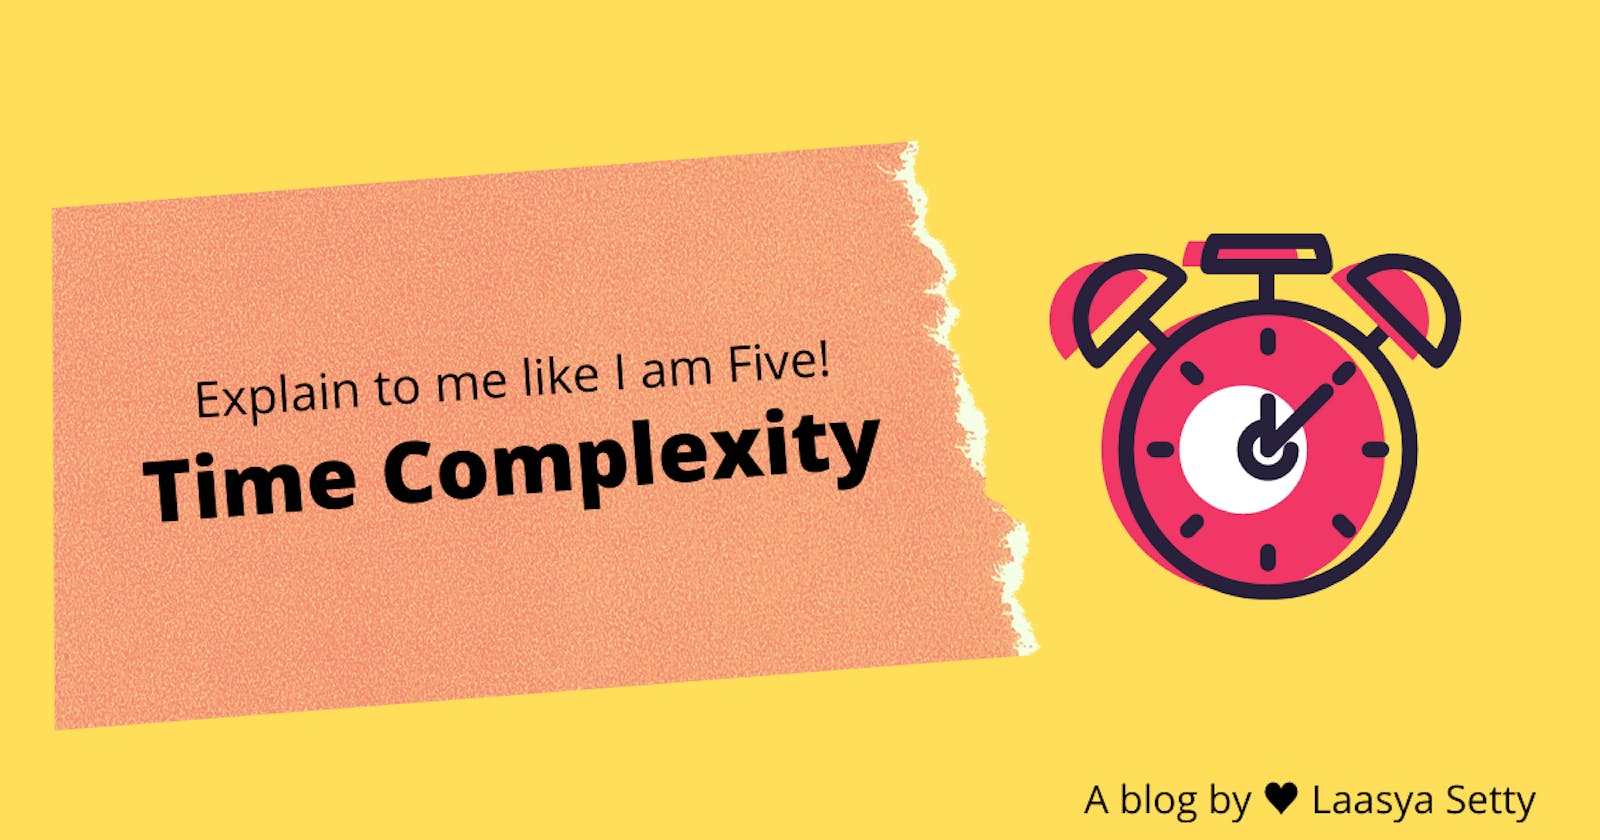 Explain To Me Like I Am Five:
Time Complexity